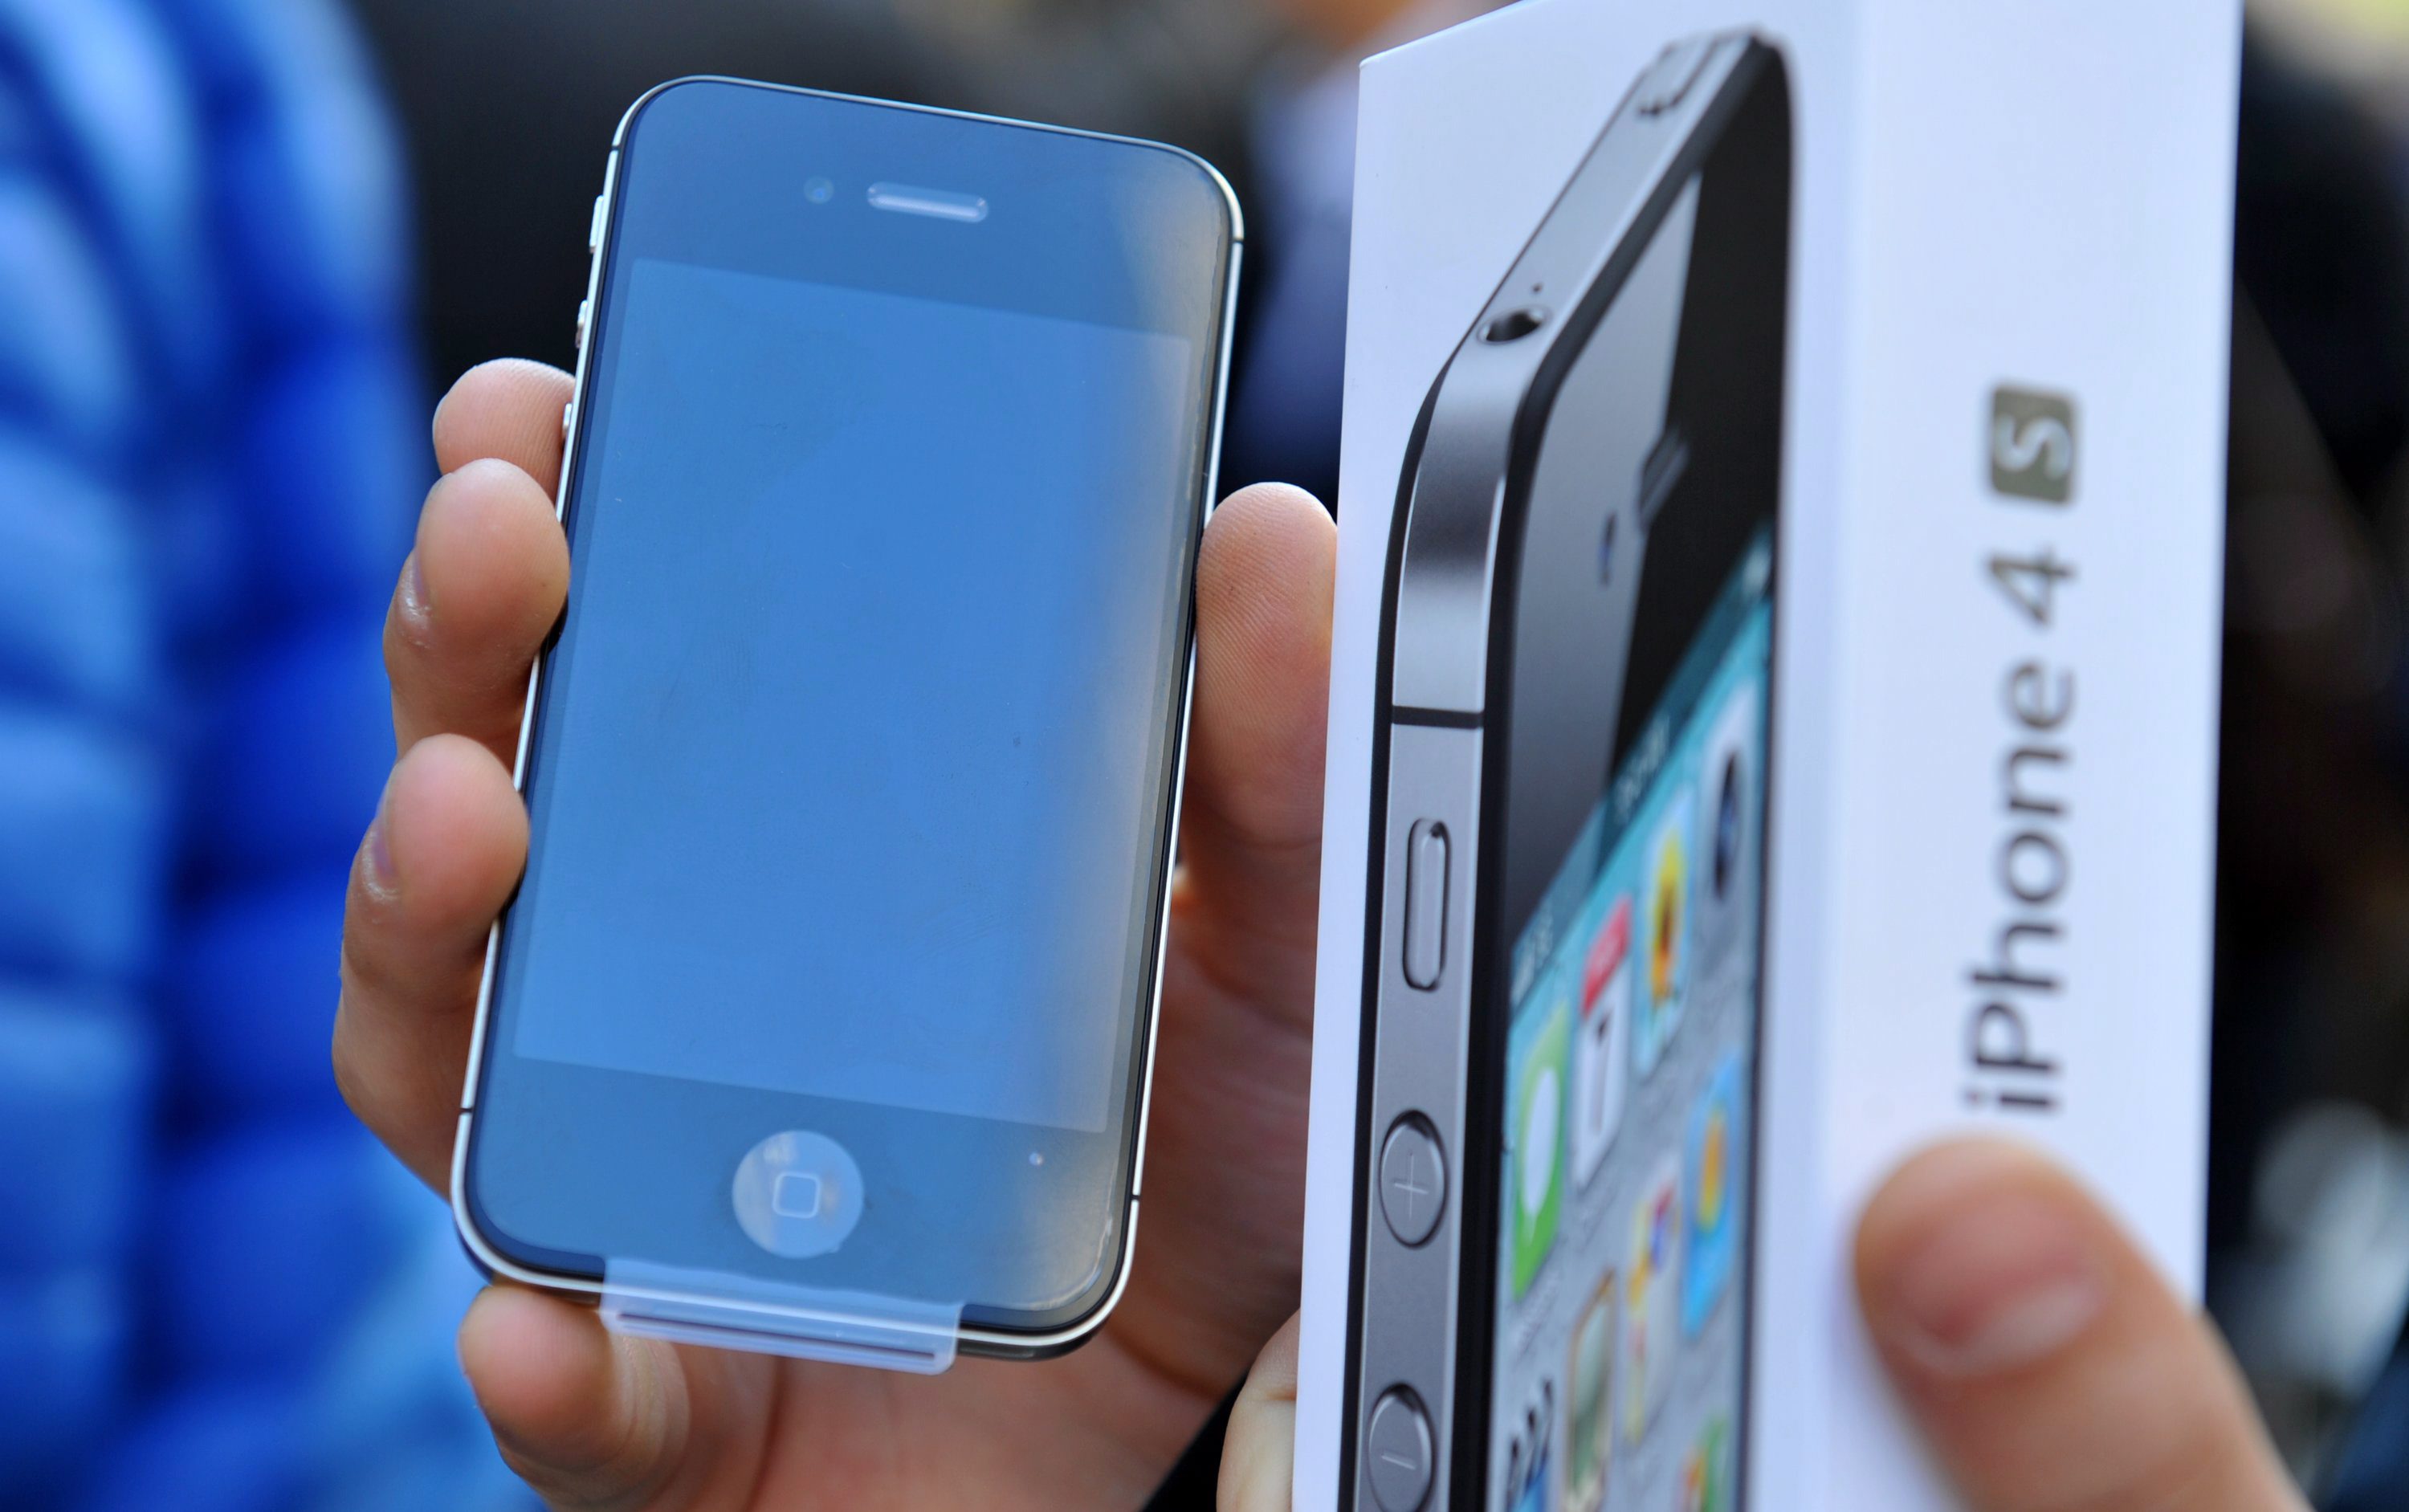 Apple ще оптимизира iOS 9, така че новата платформа да работи безпроблемно с по-стари устройства